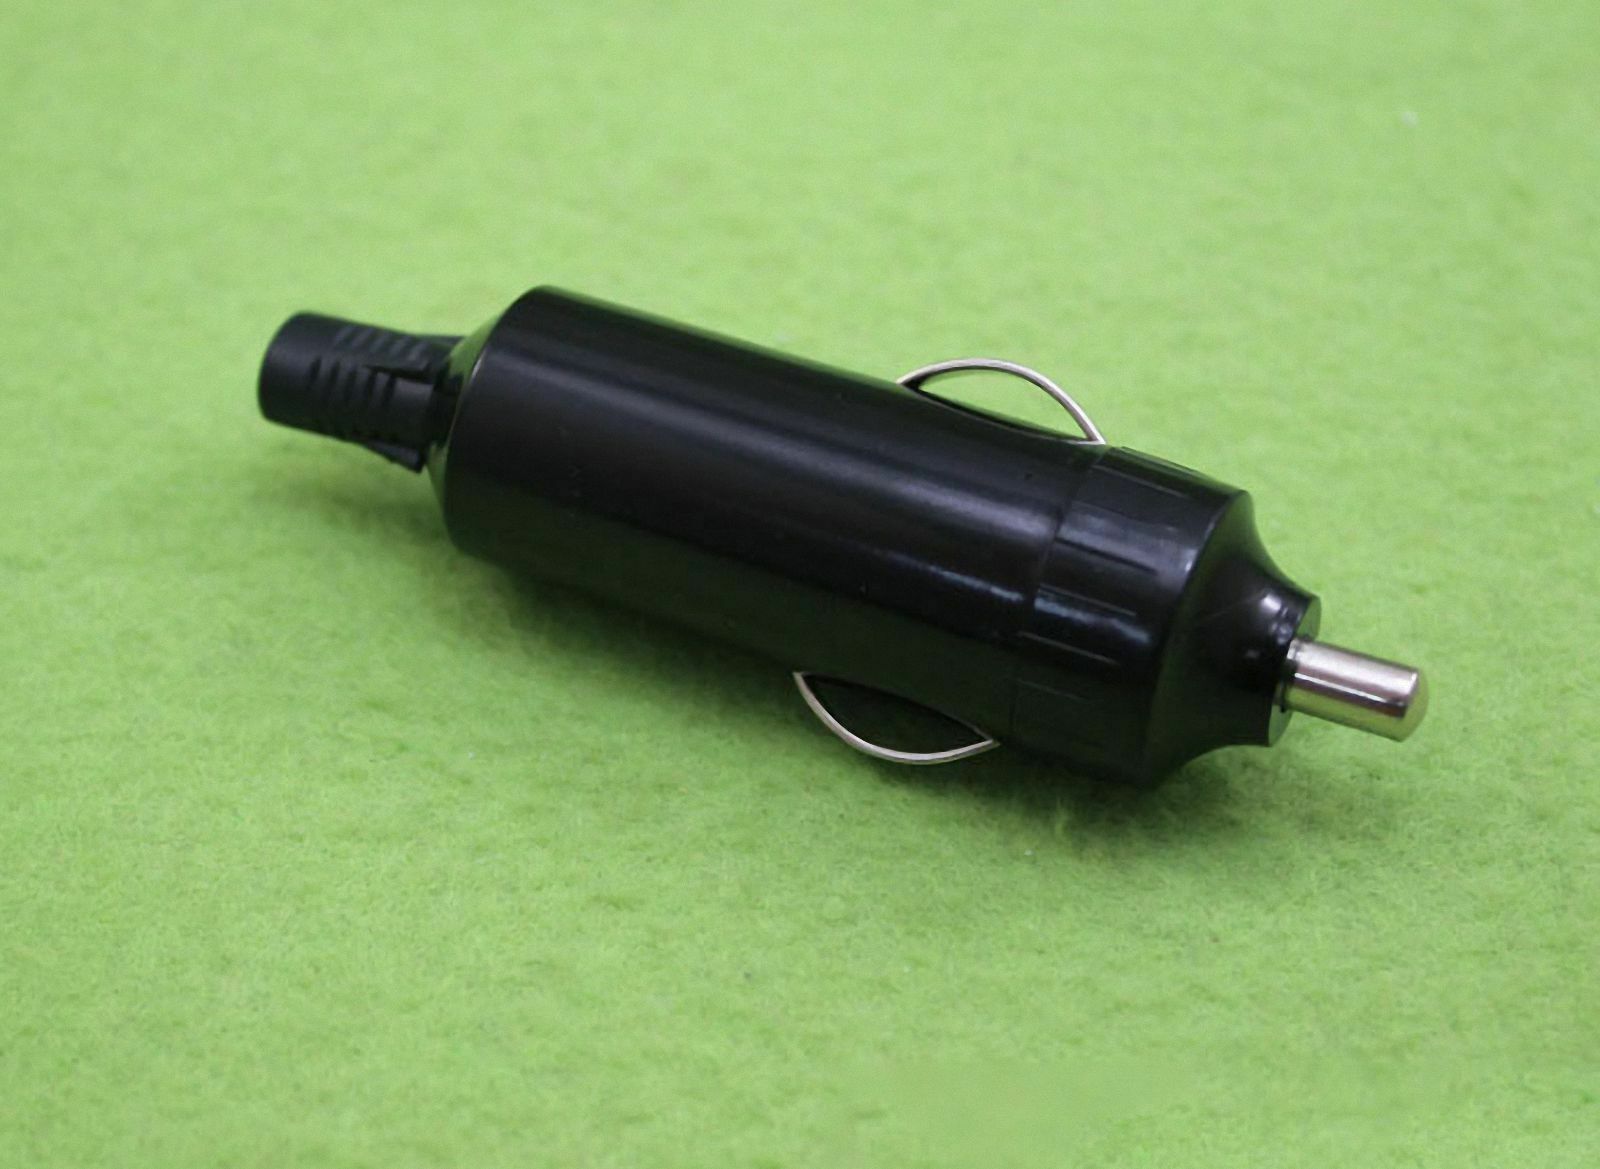 5 PCS Car Power Cigarette Plug Charger Welding Cable DIY [M_M_S]